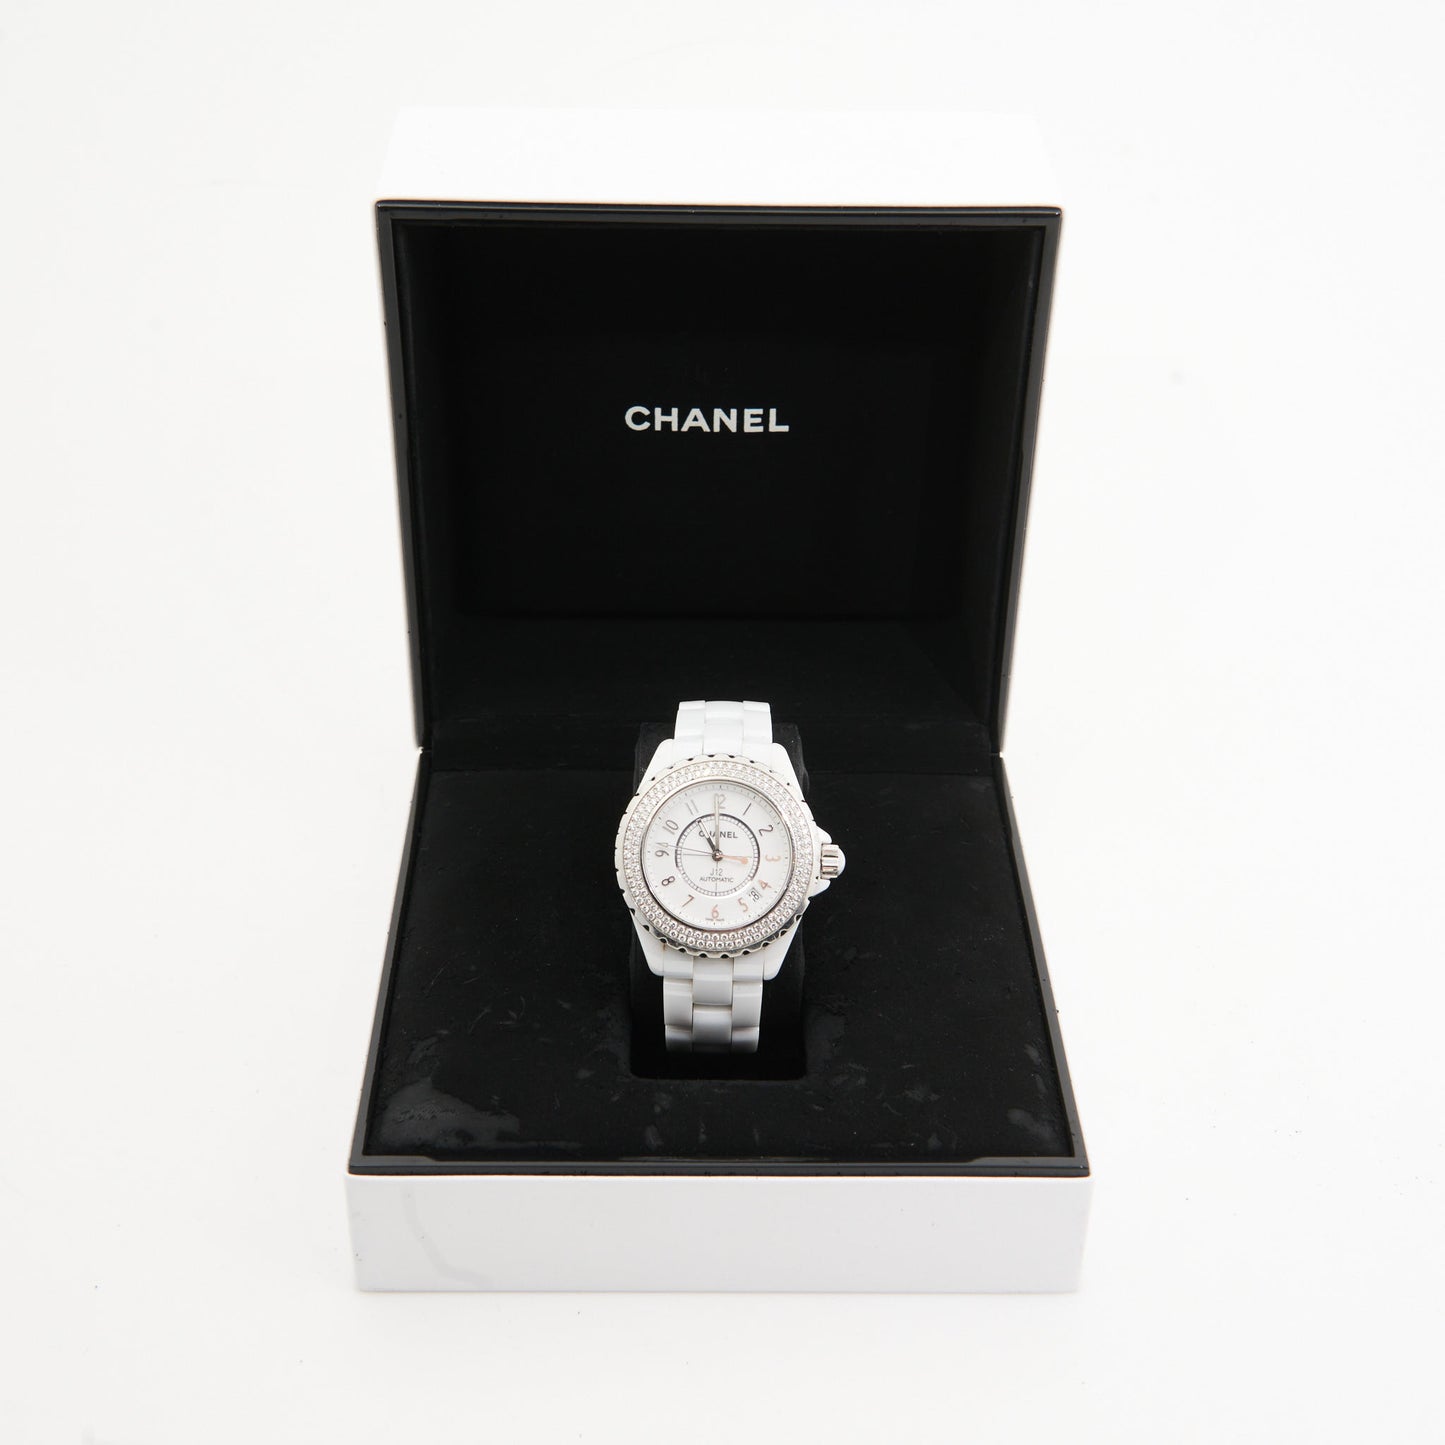 Chanel White J12 Diamond H0969 Watch